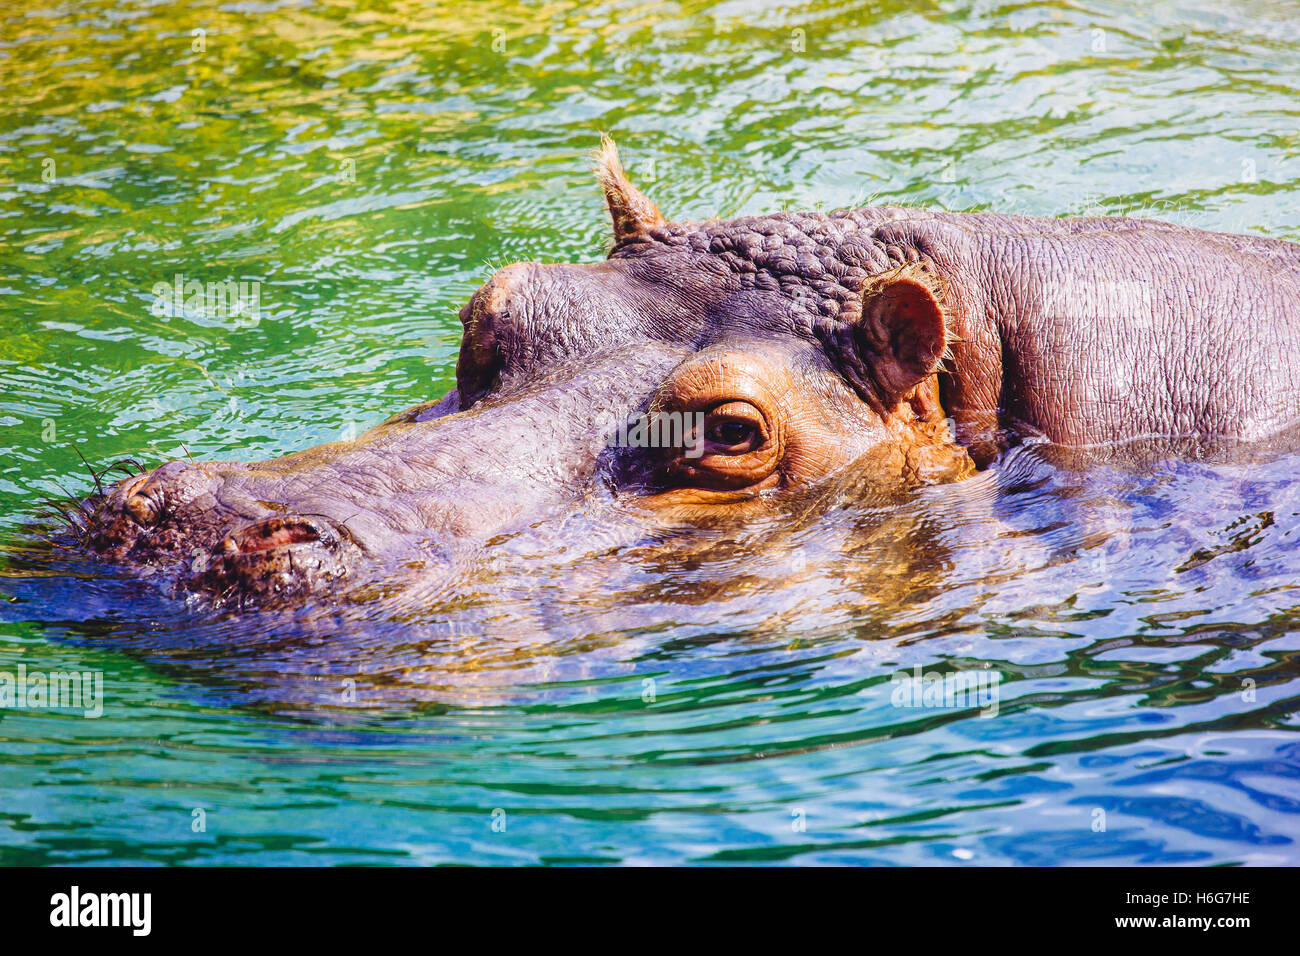 Le chef d'un hippopotame sortant de l'eau dans lequel l'animal est submergé. Banque D'Images